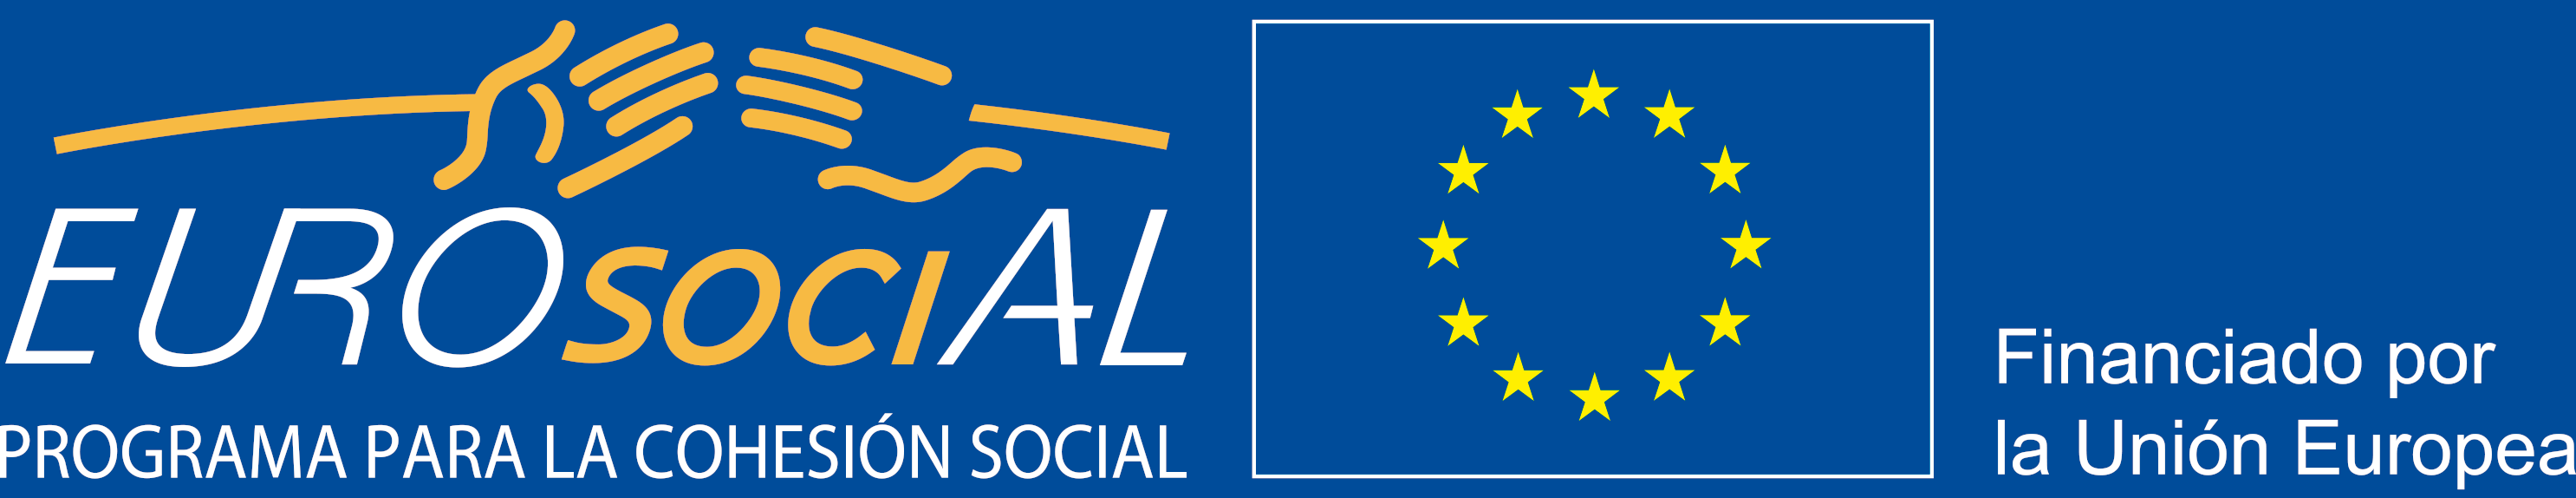 Log EUROsociAL, programa para la cohesión social, financiado por la Unión Europea, con bandera de la UE, y símbolo de dos manos que se acercan